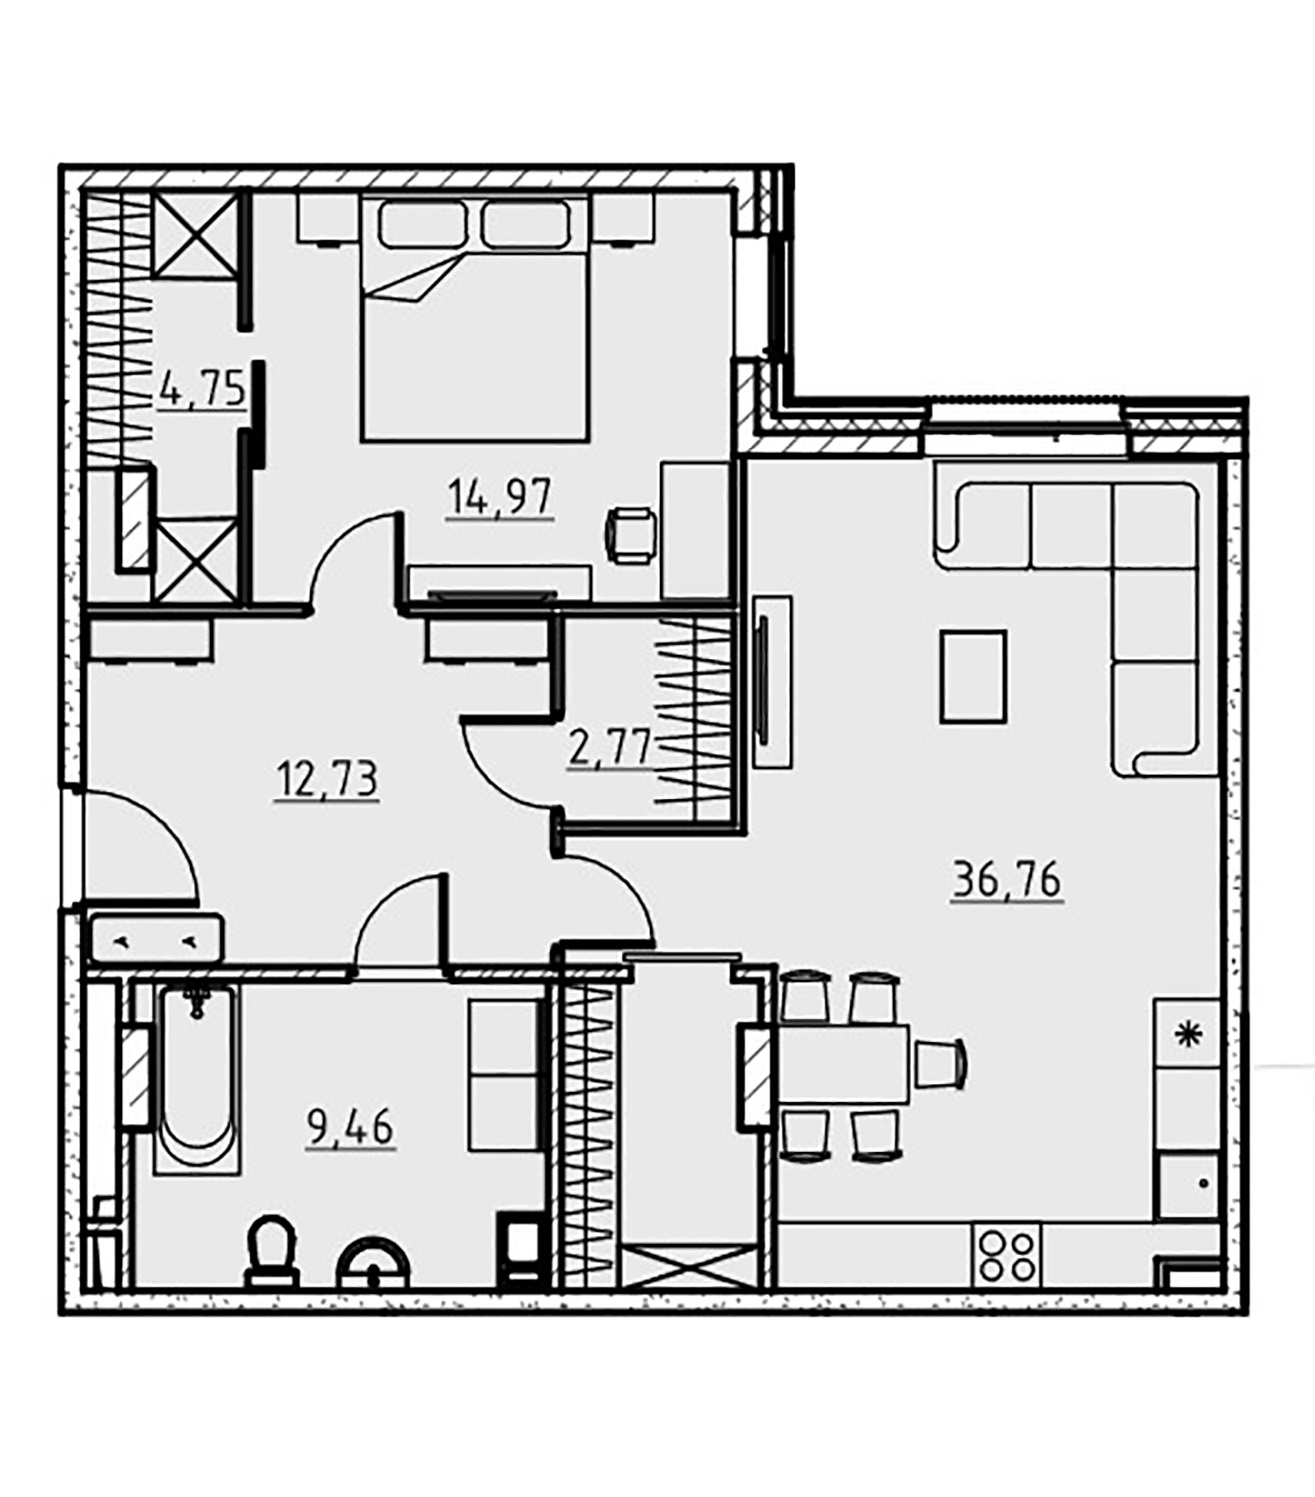 1-комнатная квартира  №9 в Манхэттен: 81.6 м², этаж 4 - купить в Санкт-Петербурге